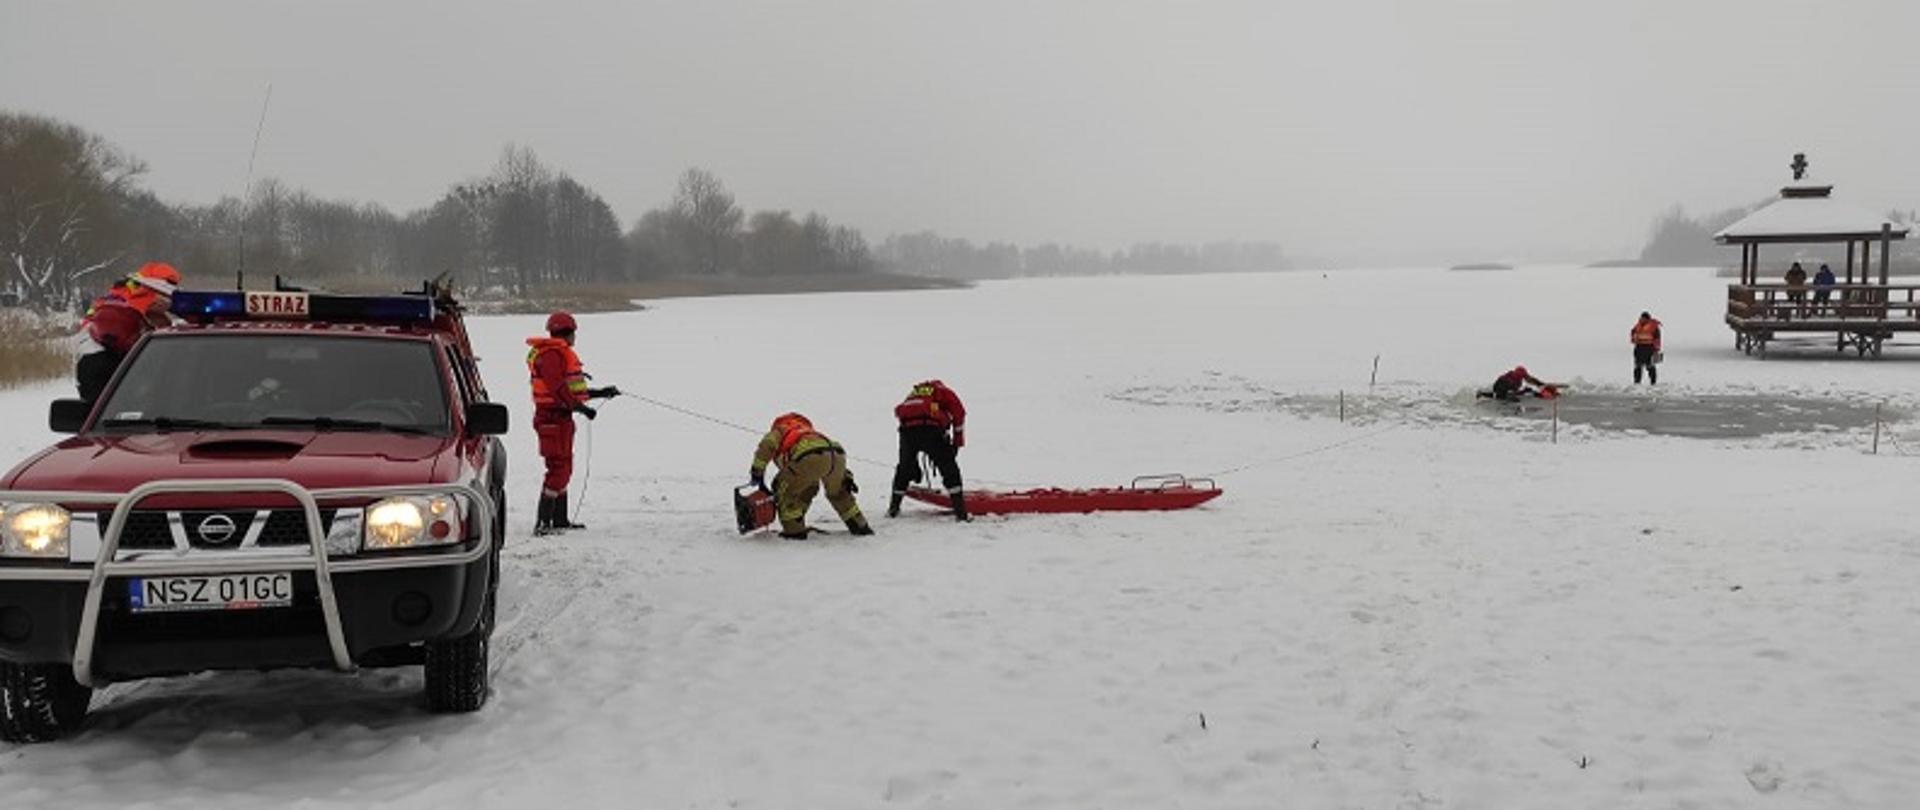 Zdjęcia przedstawia ratowników przygotowujących się do transportu poszkodowanego przy pomocy deski lodowej